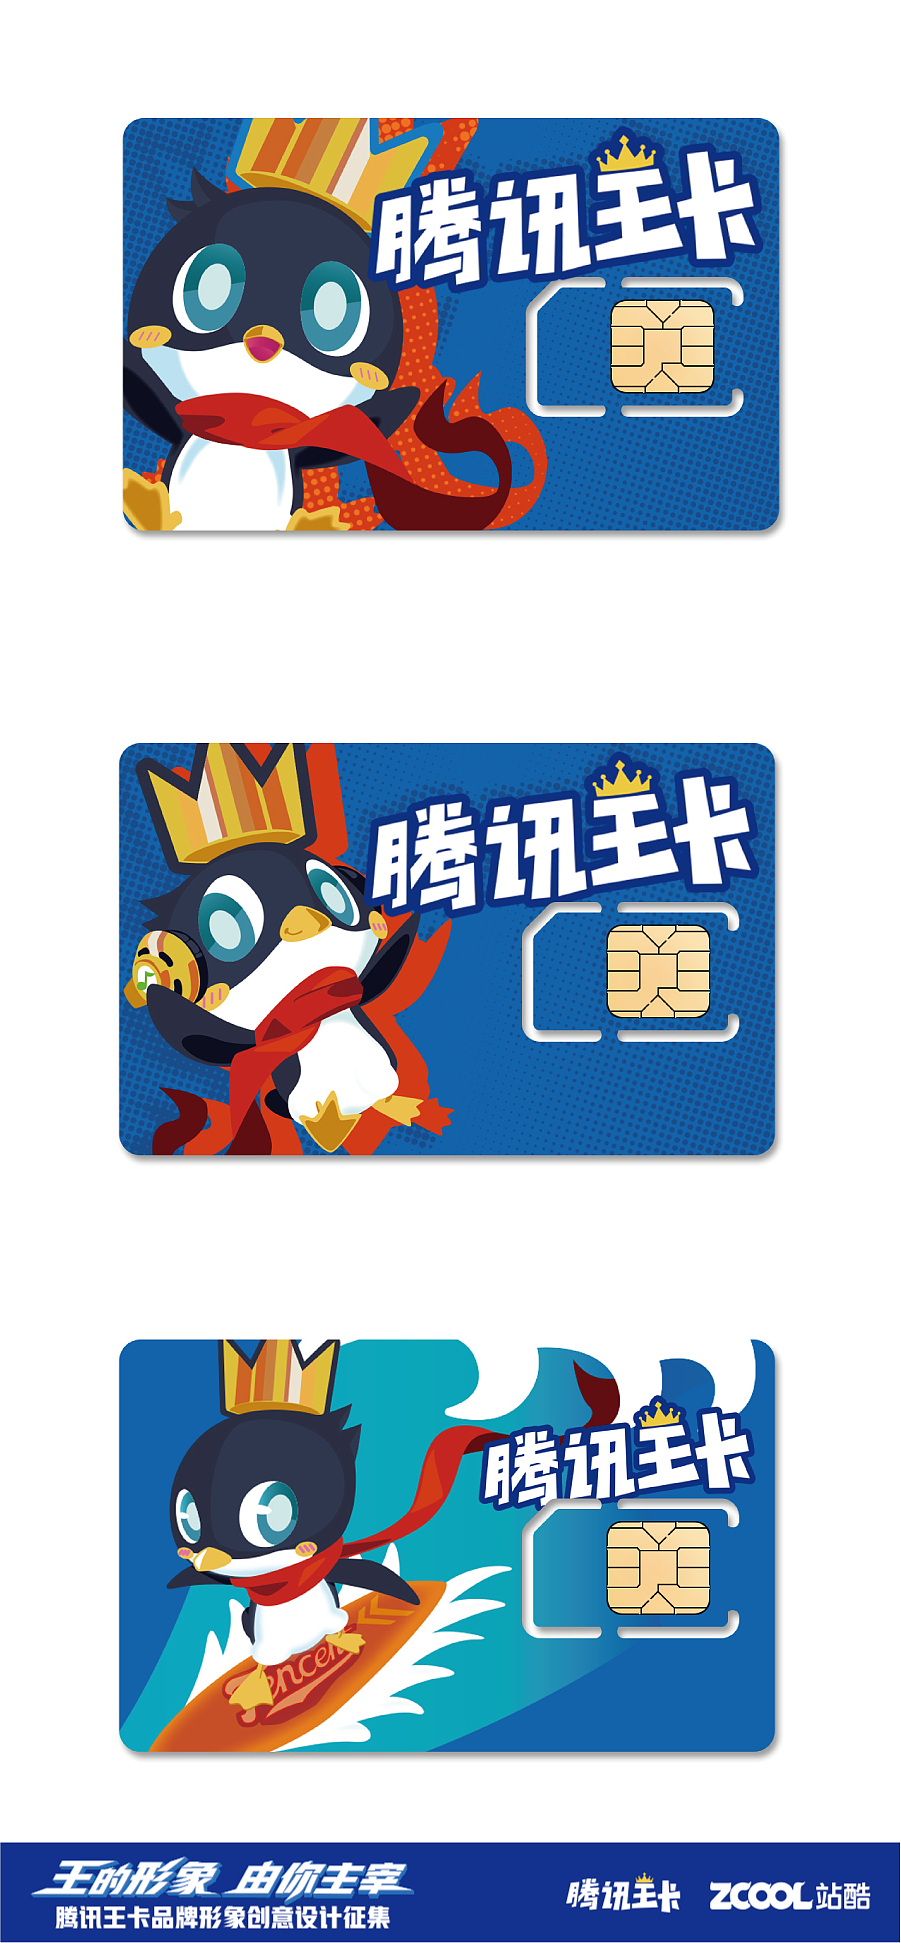 腾讯王卡品牌形象--企鹅仔penny|平面|吉祥物